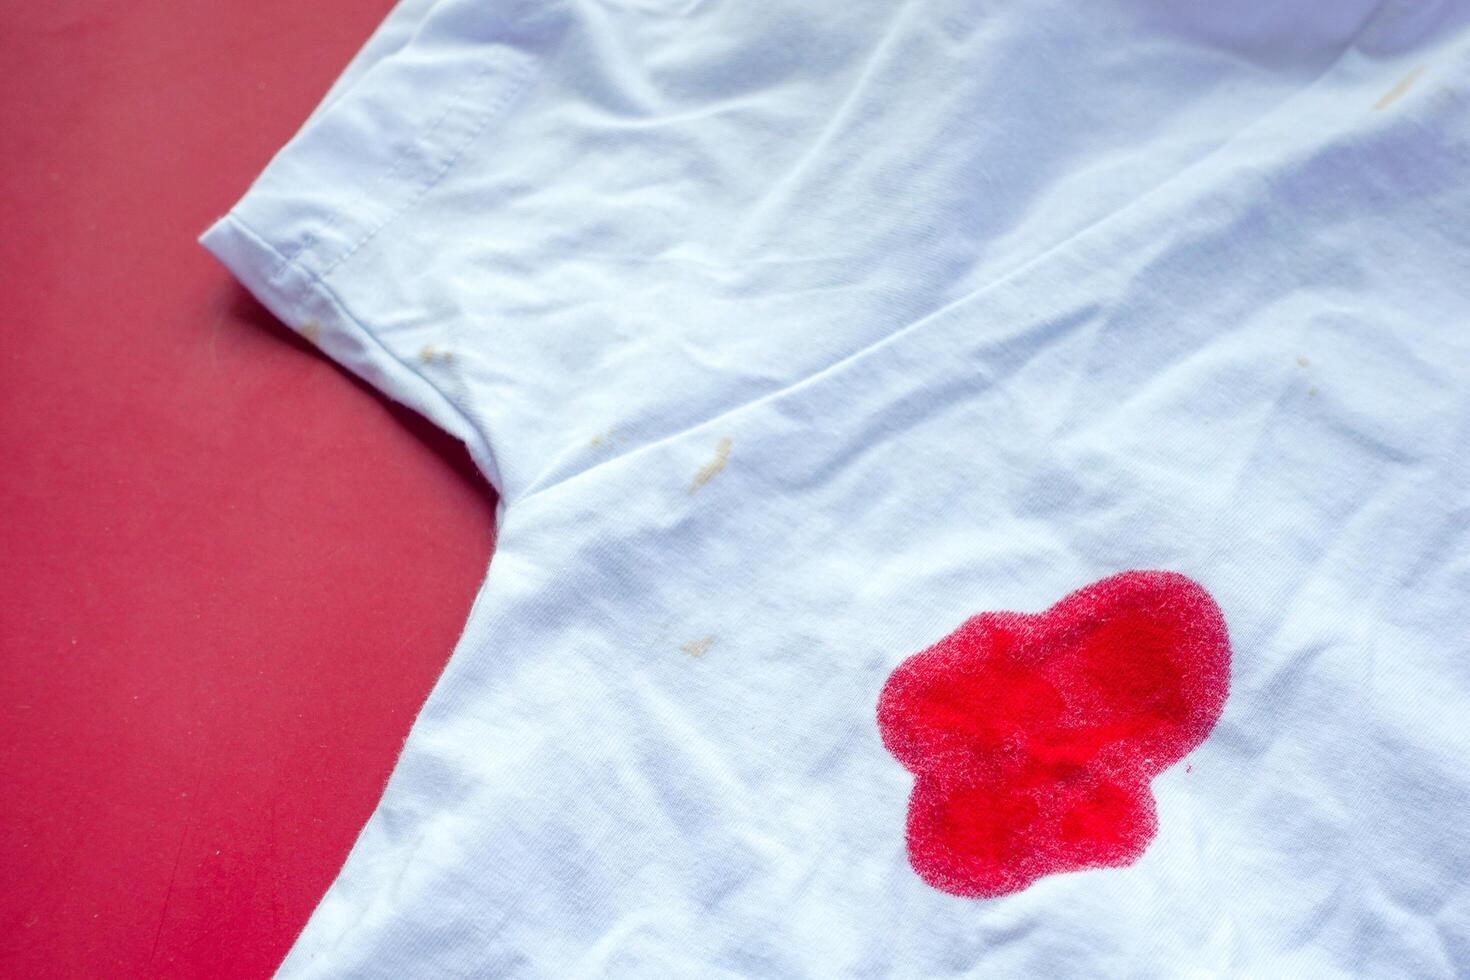 blod fläckar på en vit skjorta. foto